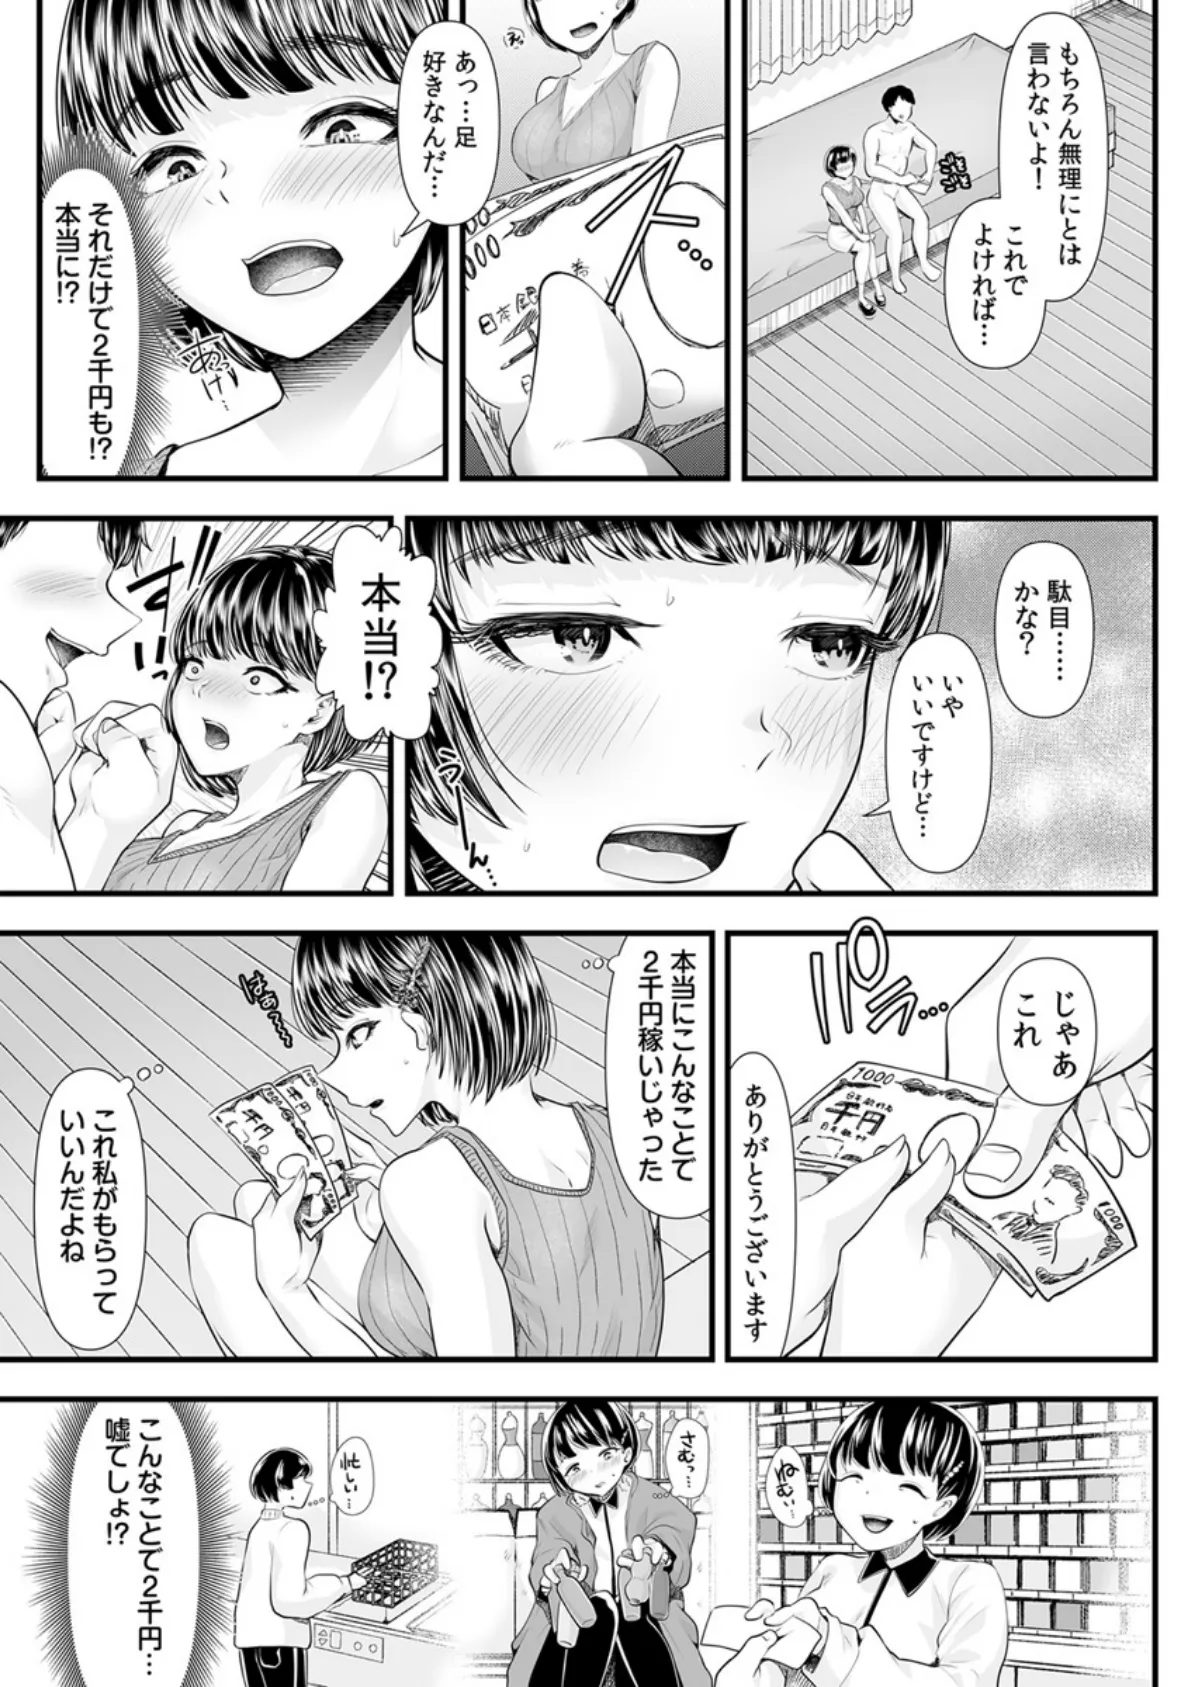 M男向けオナクラ〜小悪魔のイタズラ〜 3巻 5ページ